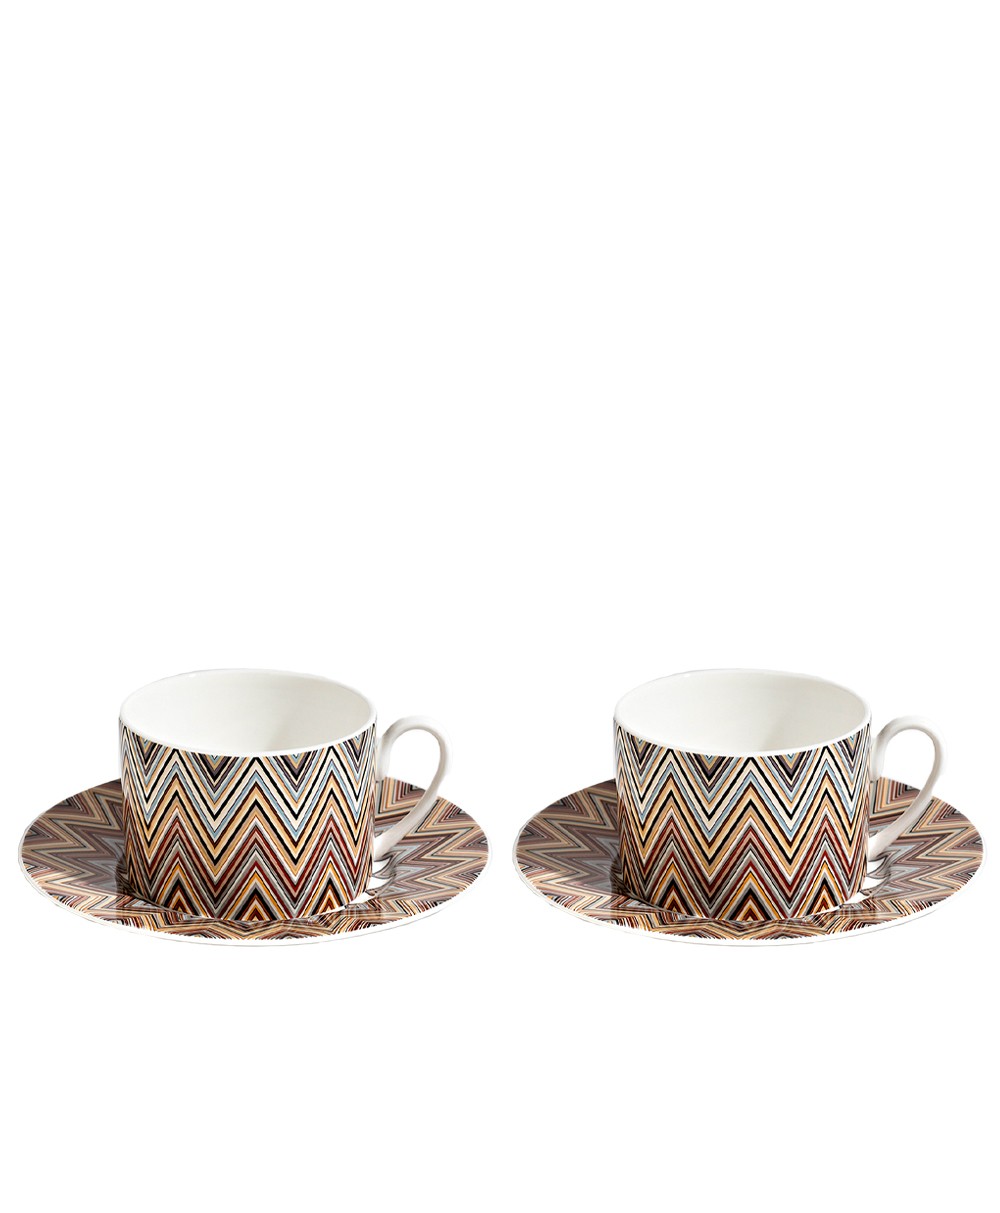 Produktbild der Tee Tasse Zig Zag in der Farbe Jarris 148 von Missoni - RAUM concept store